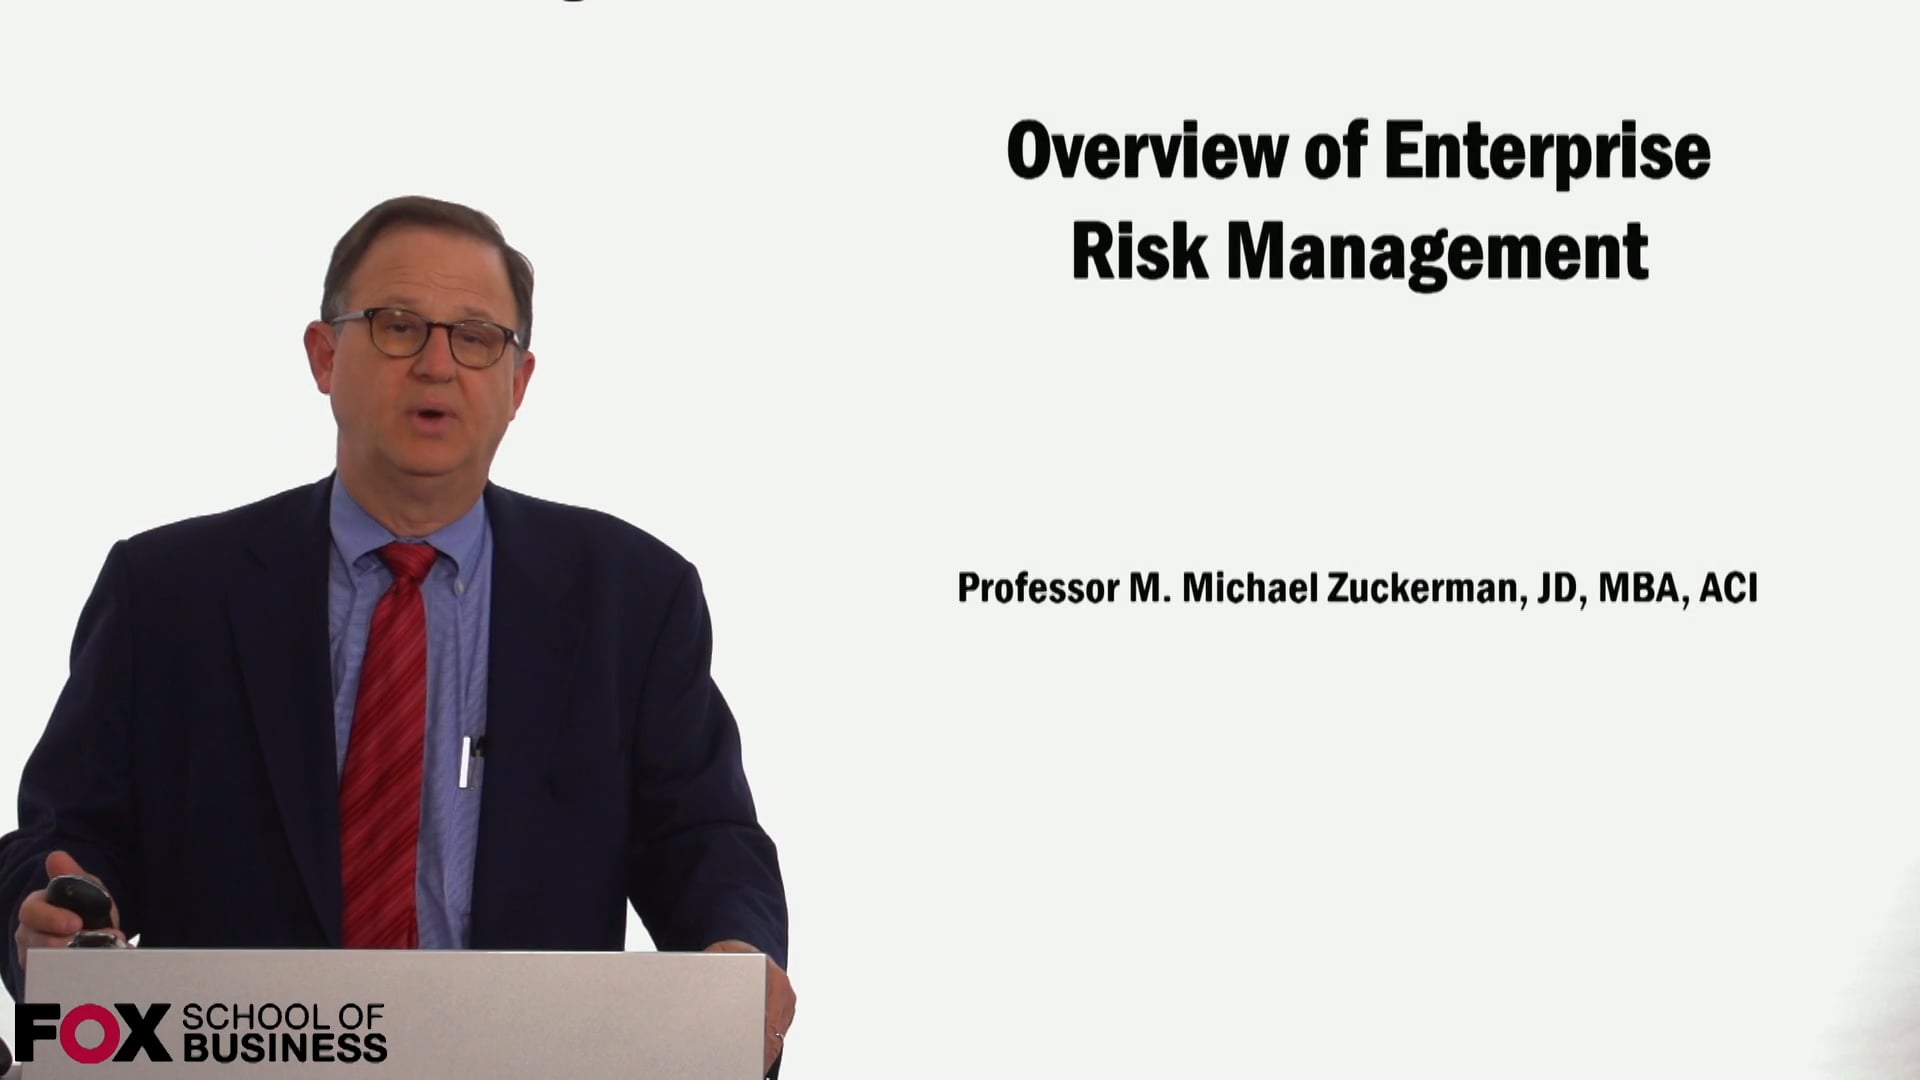 Overview of Enterprise Risk Management